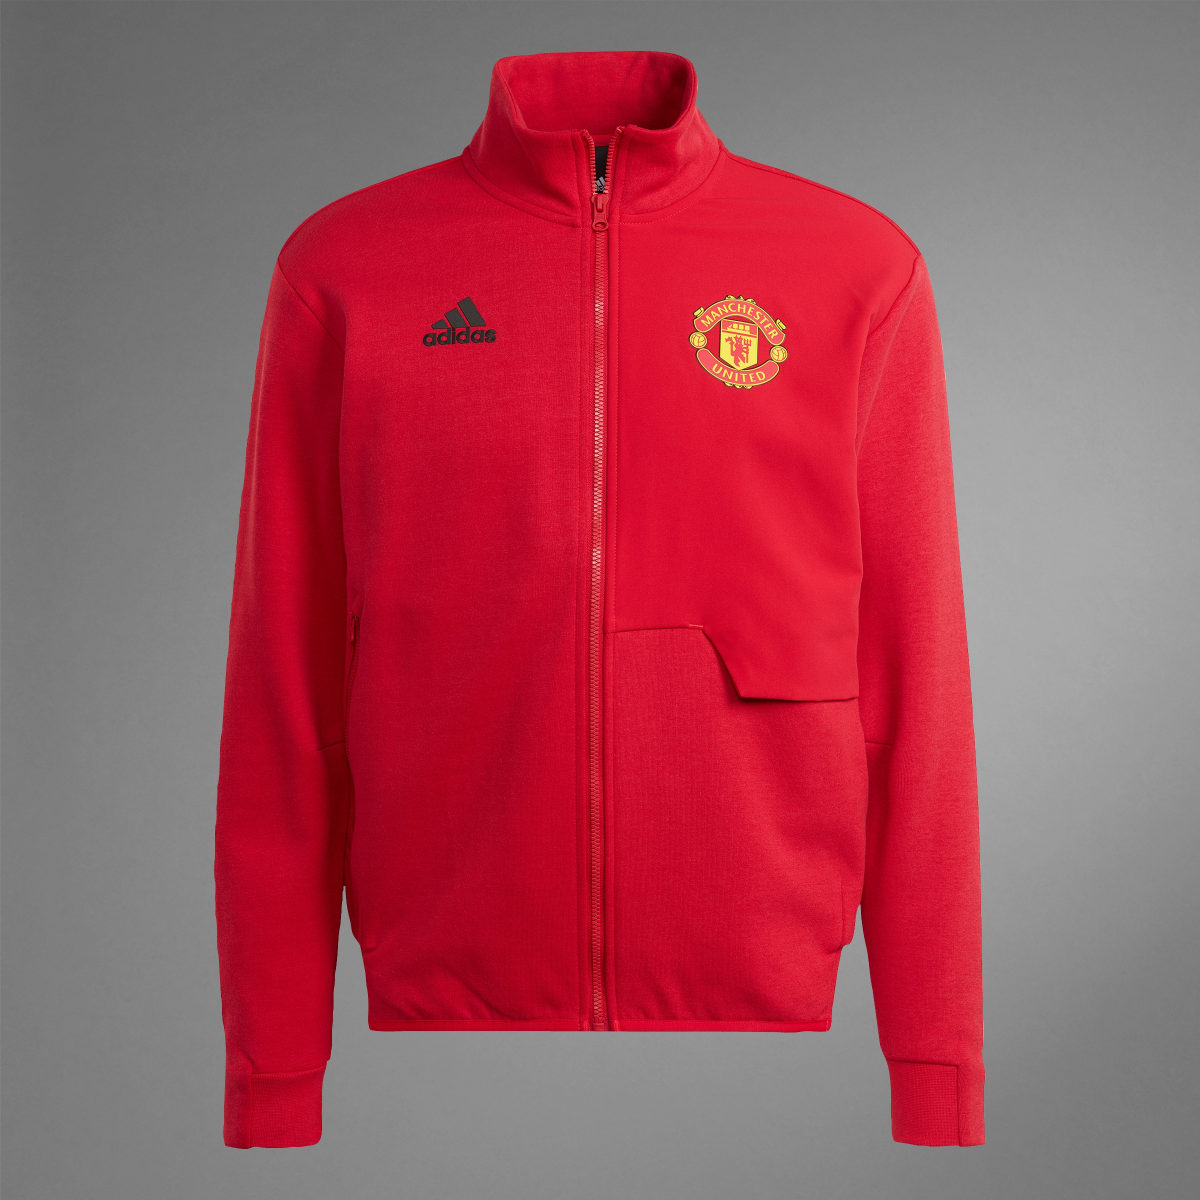 Adidas Manchester United Anthem Jacket. 9